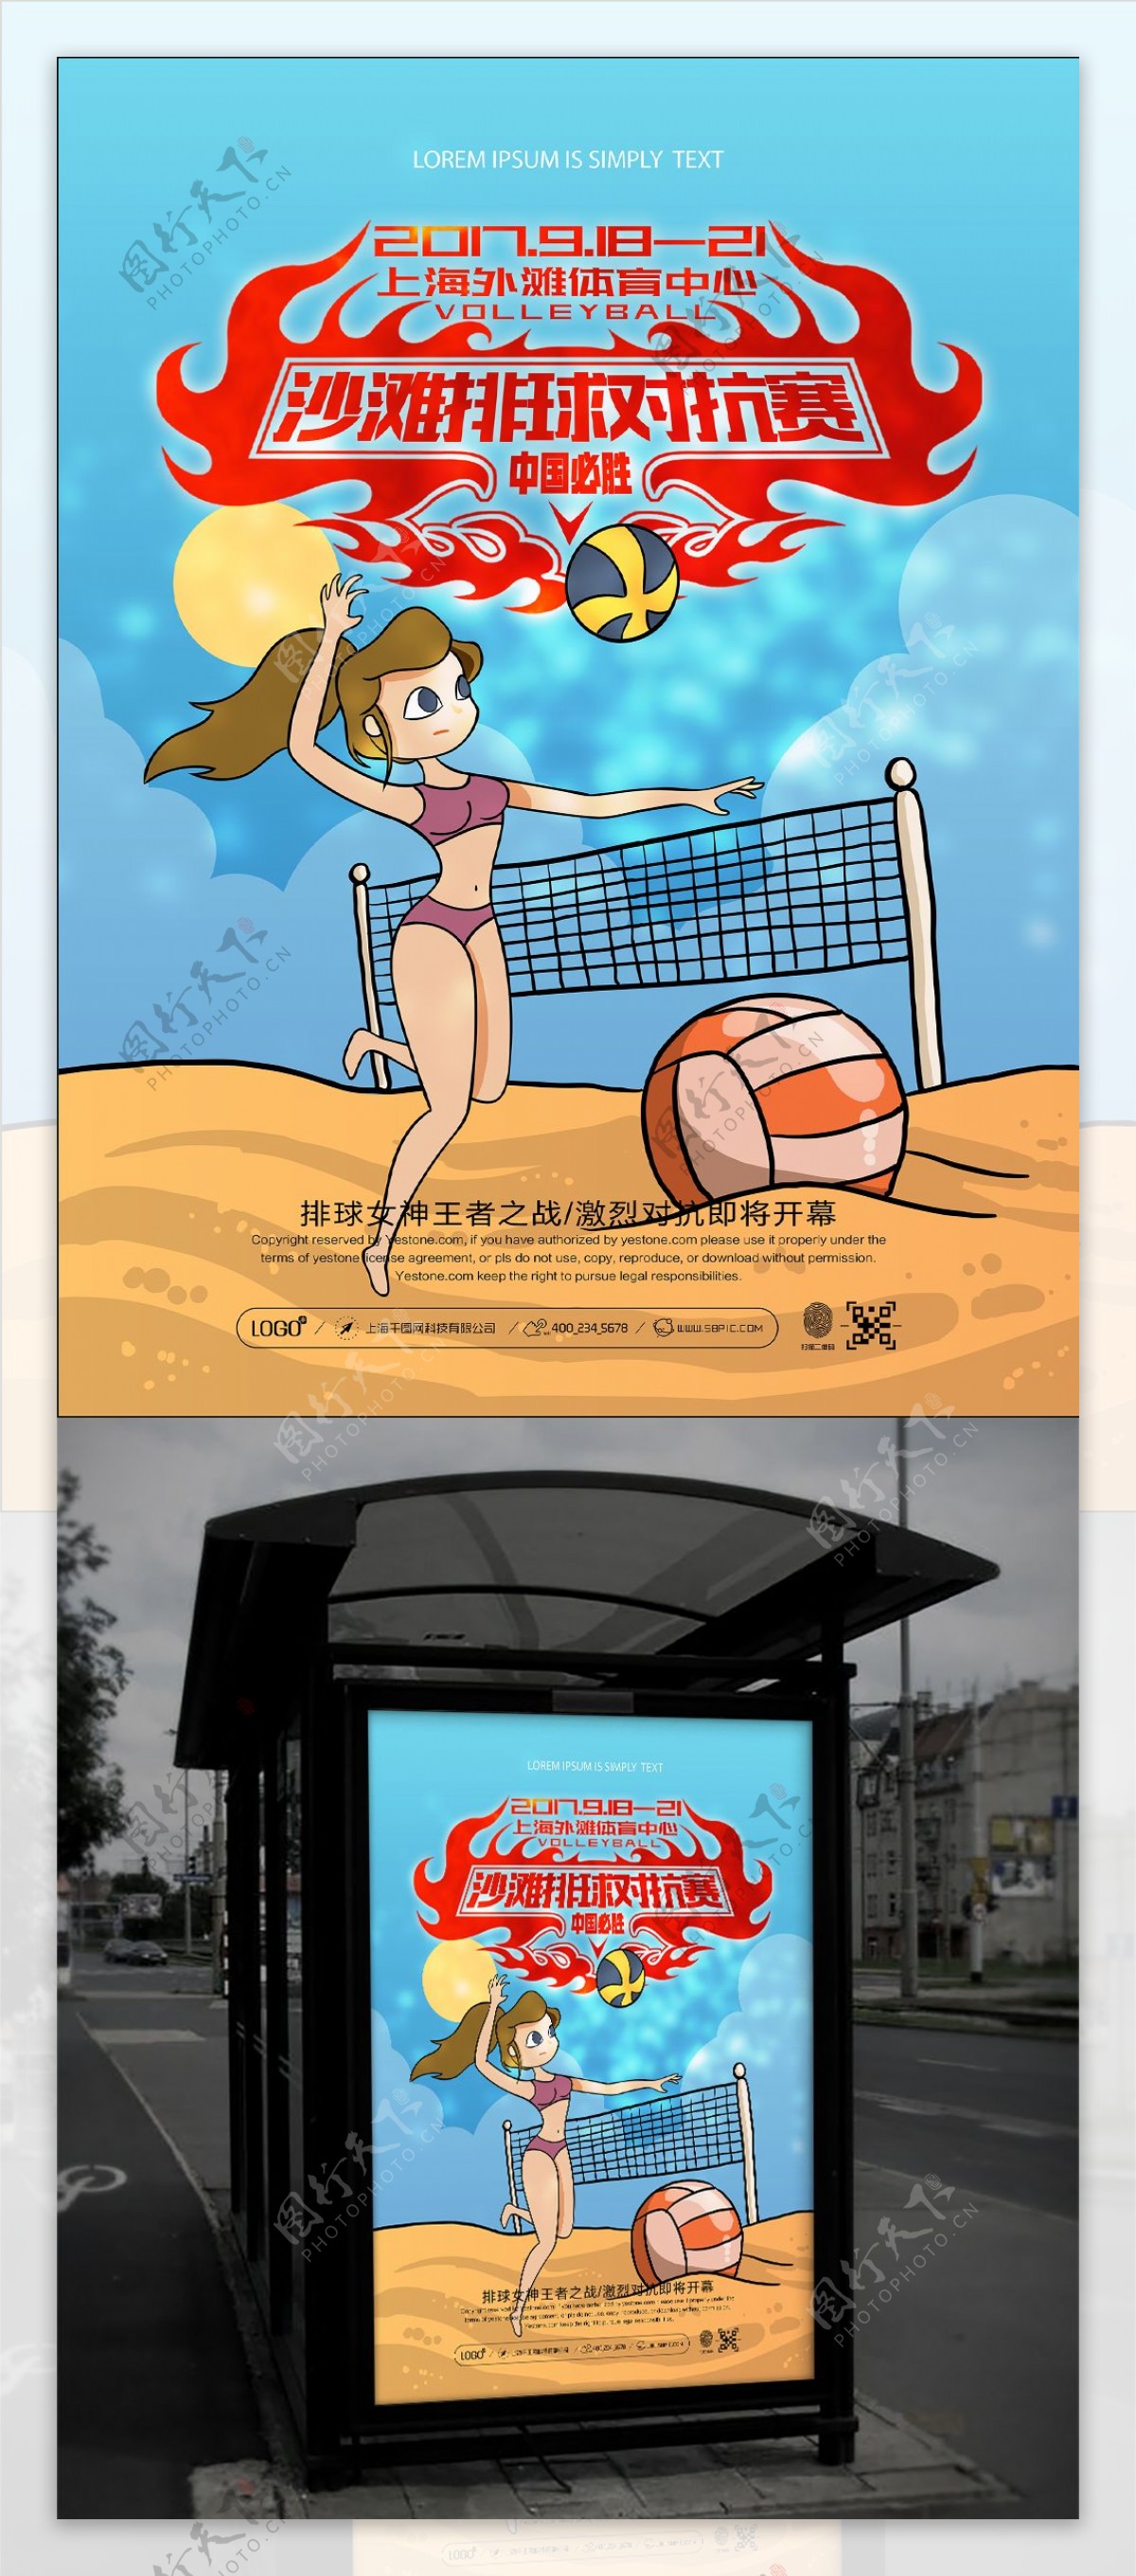 清新简约沙滩排球对抗赛比赛宣传海报